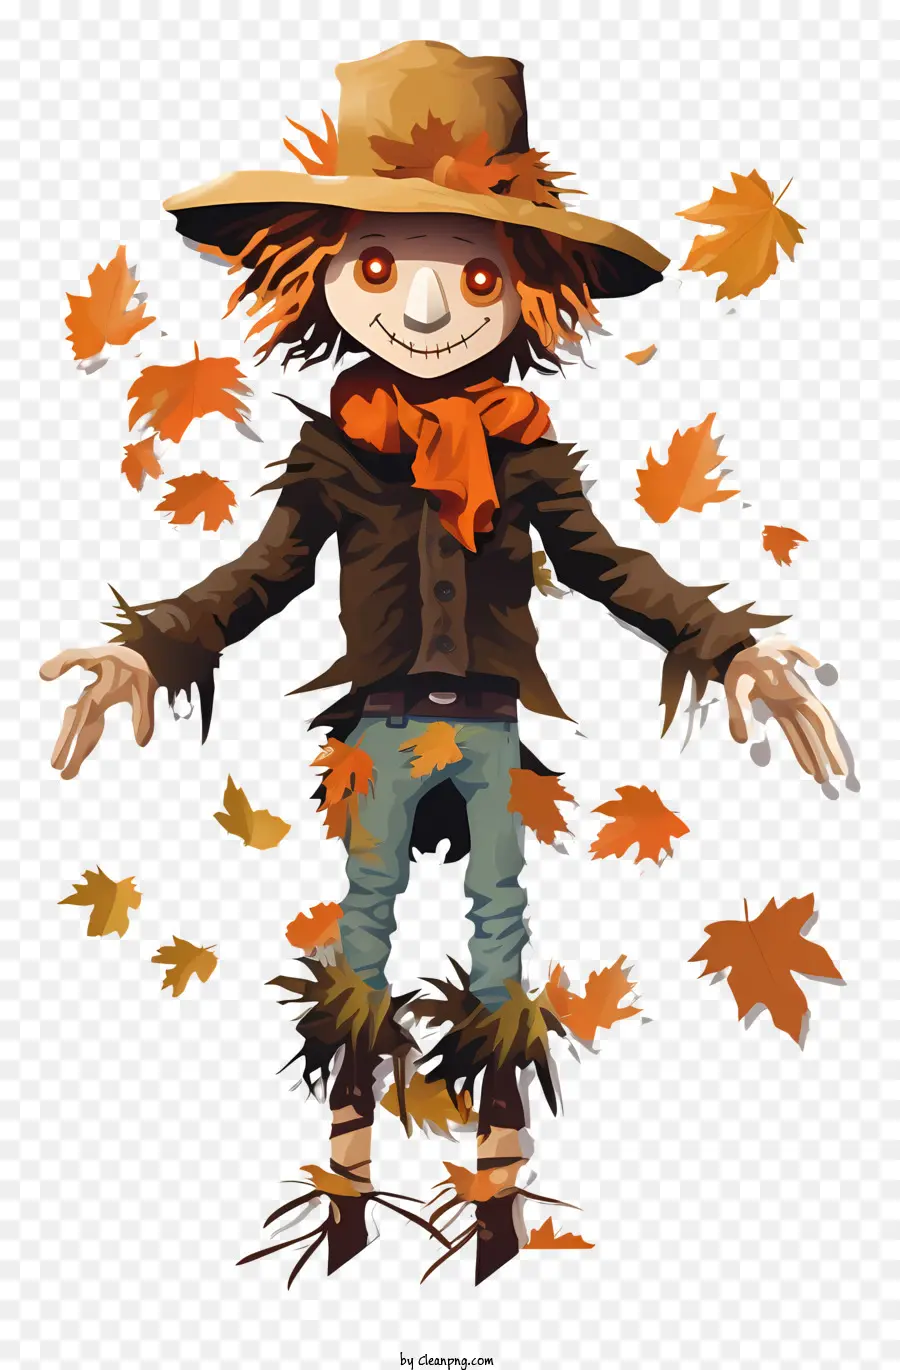 Fallende Blätter im Herbst - Cartoon -Charakter im Herbstfeld glücklich von fallenden Blättern umgeben